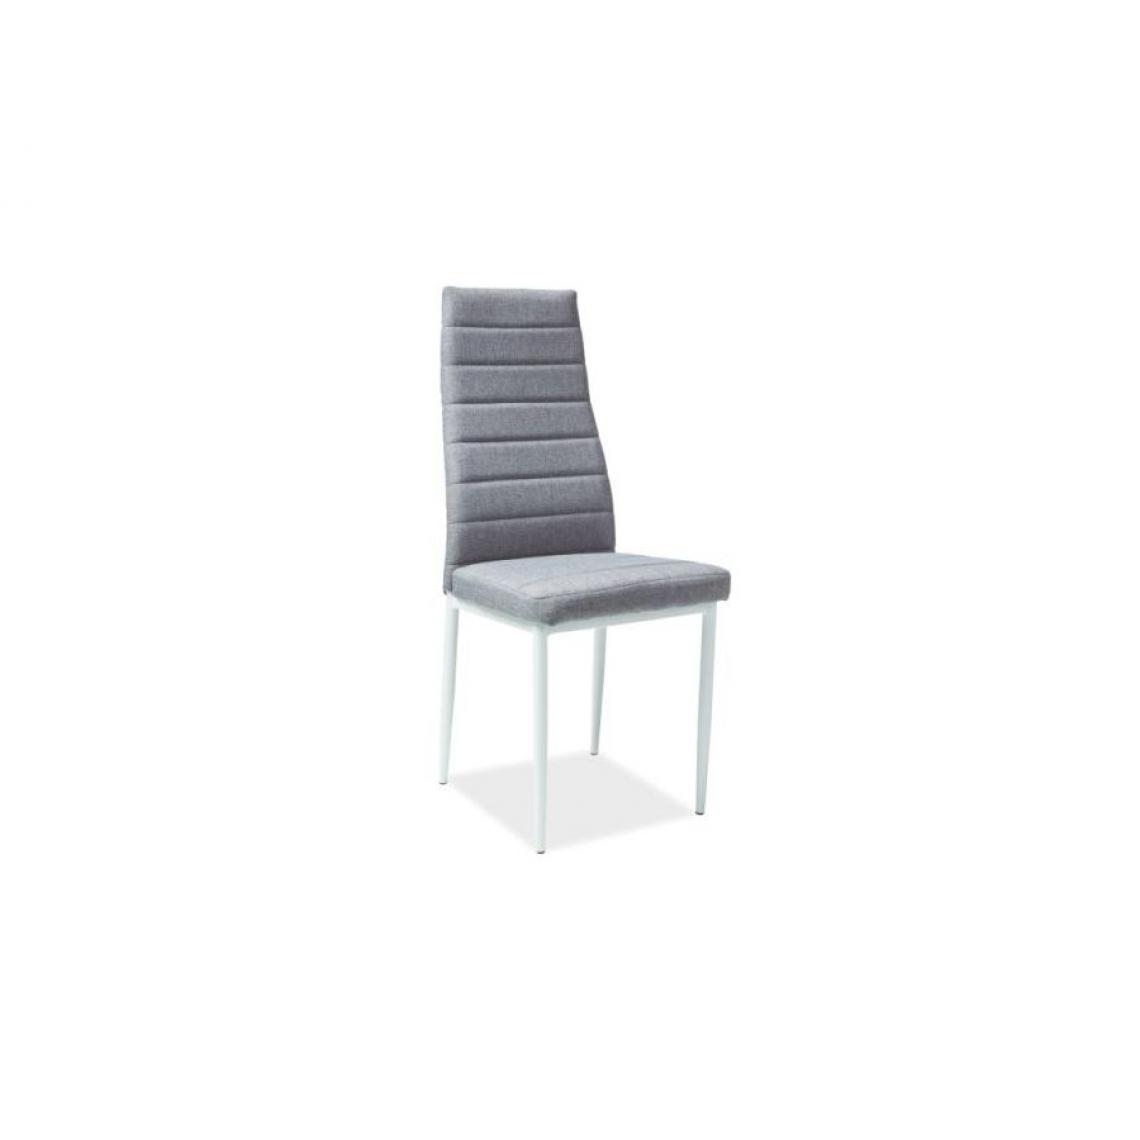 Hucoco - CILLA | Chaise style scandinave avec base en métal salle à manger/bureau | Dimensions 96x40x38cm | Rembourrage en tissu - Gris - Chaises